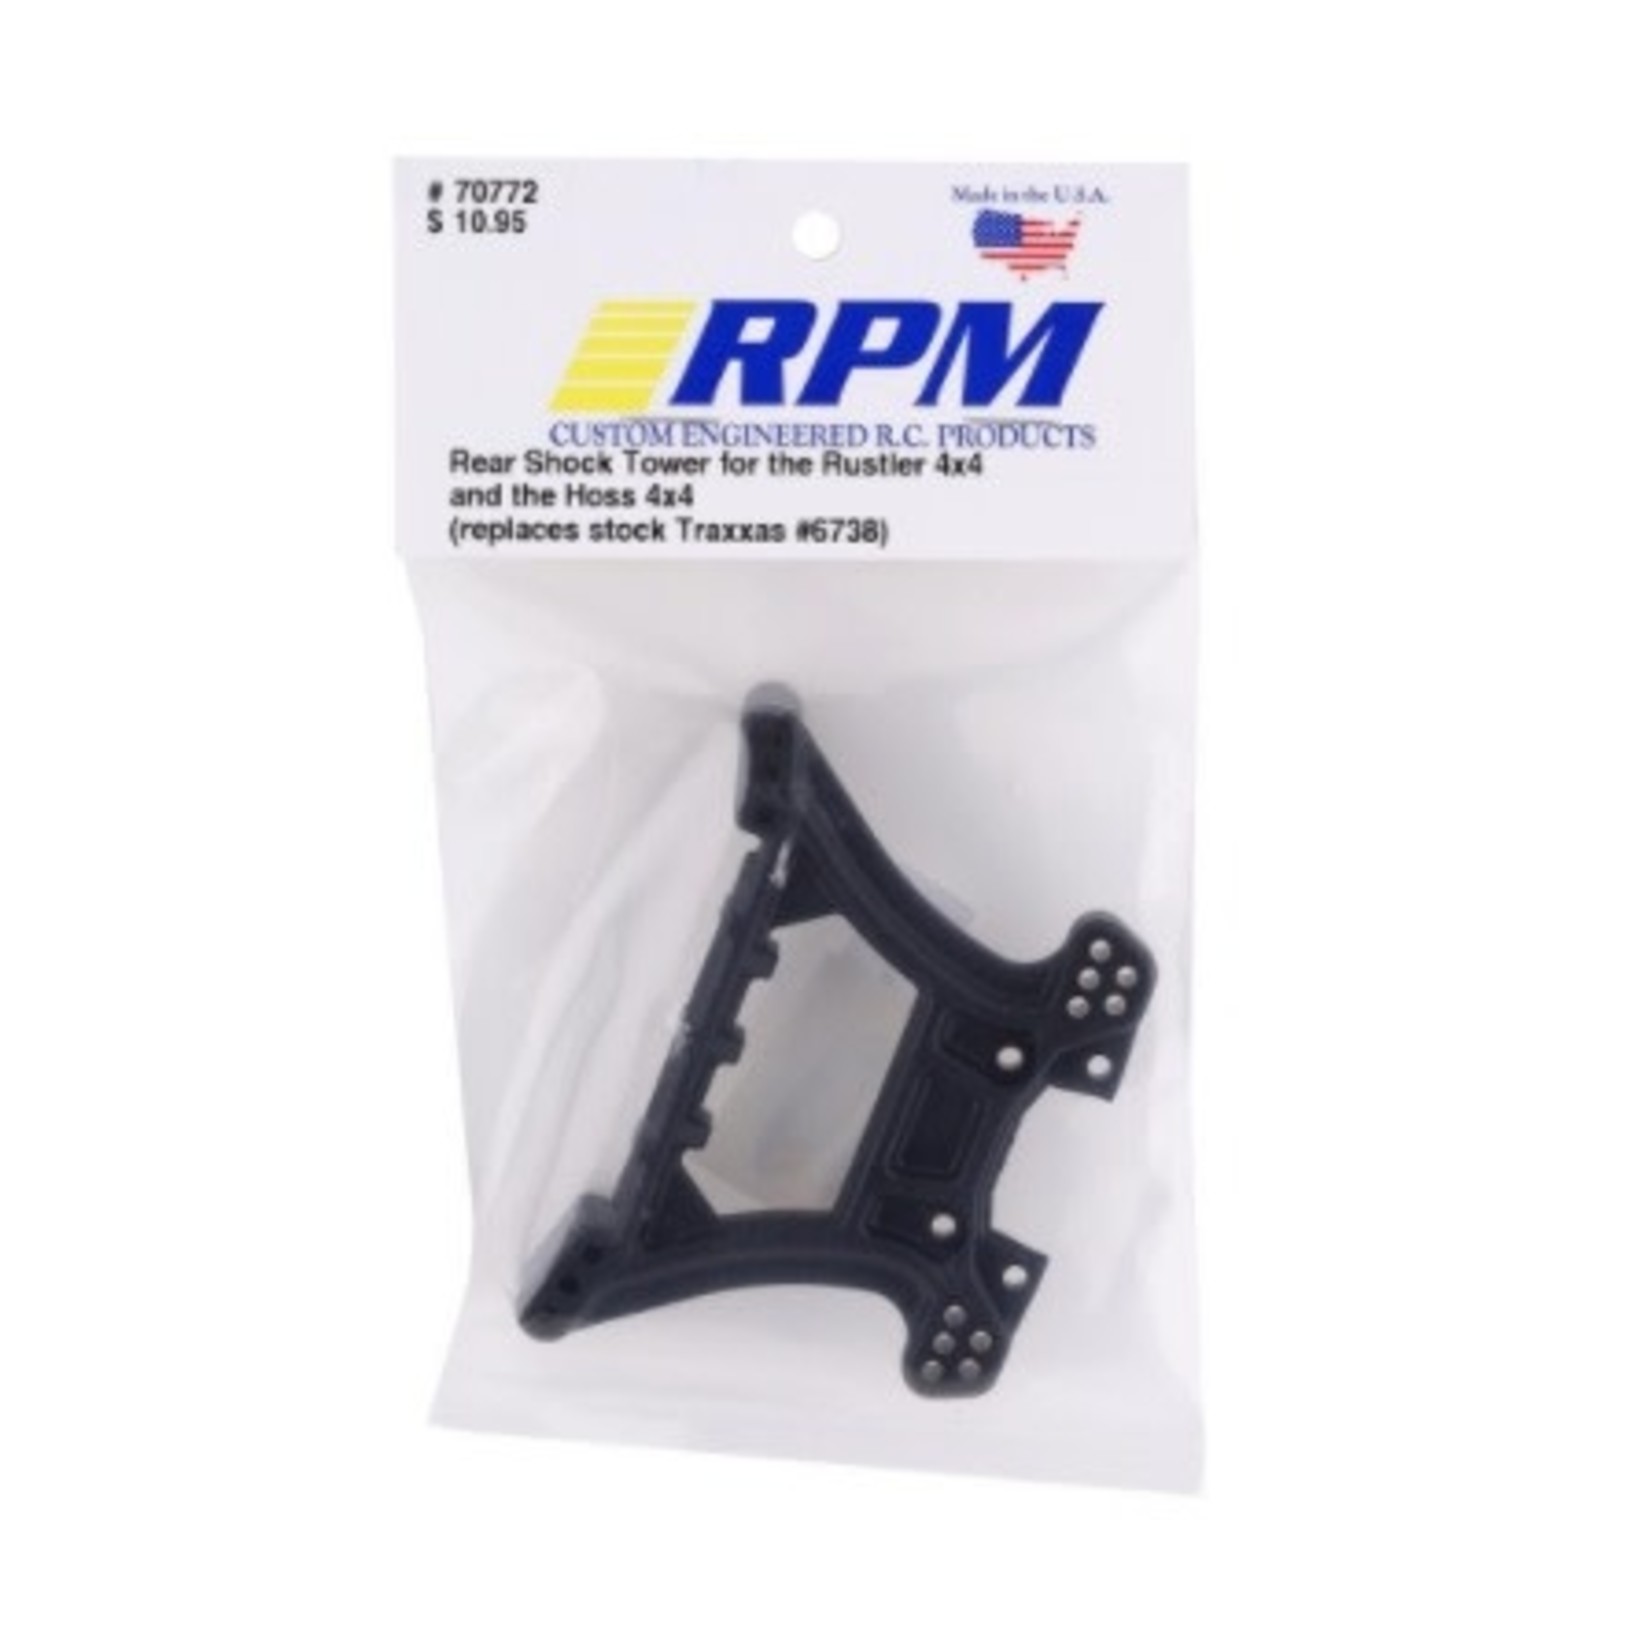 RPM RPM Hoss/Rustler 4X4 Rear Shock Tower #70772